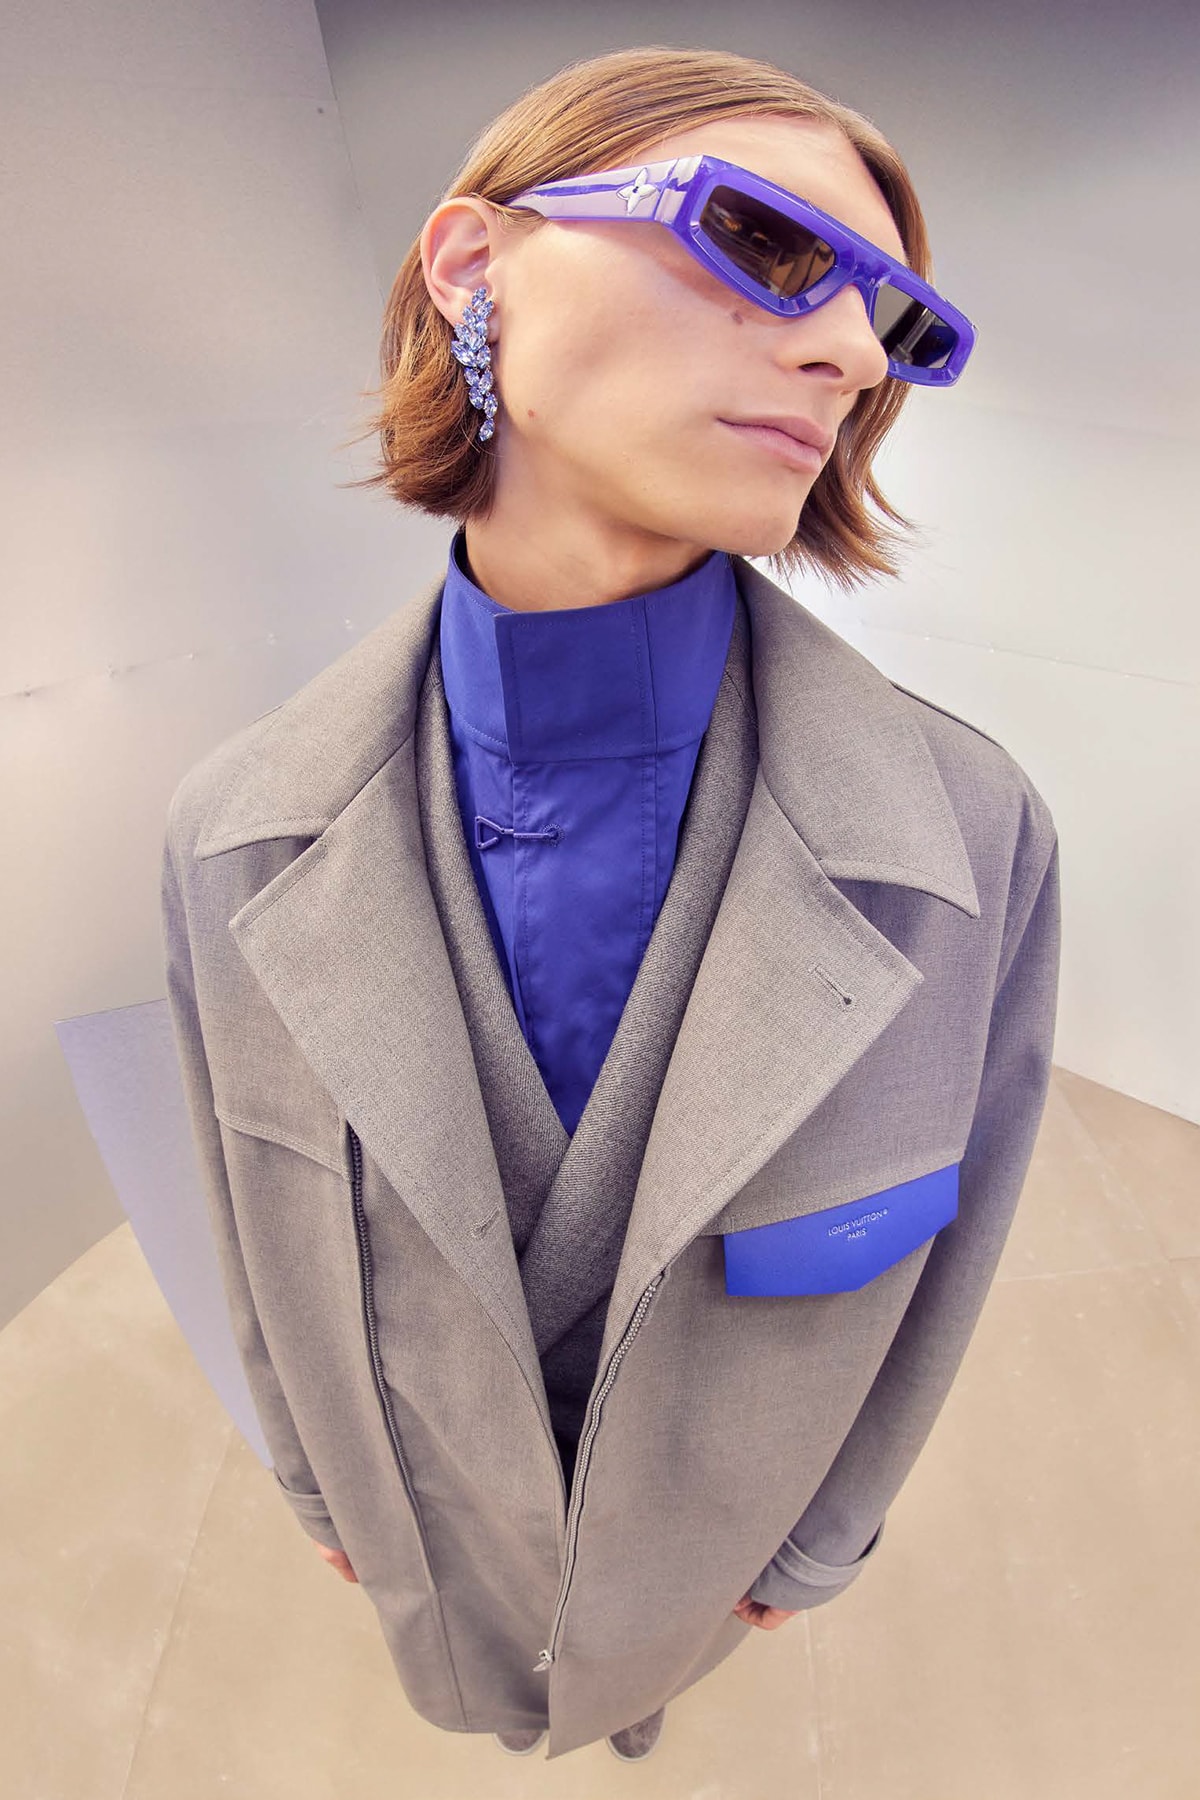 Louis Vuitton Sunglasses by Virgil Abloh (2021)